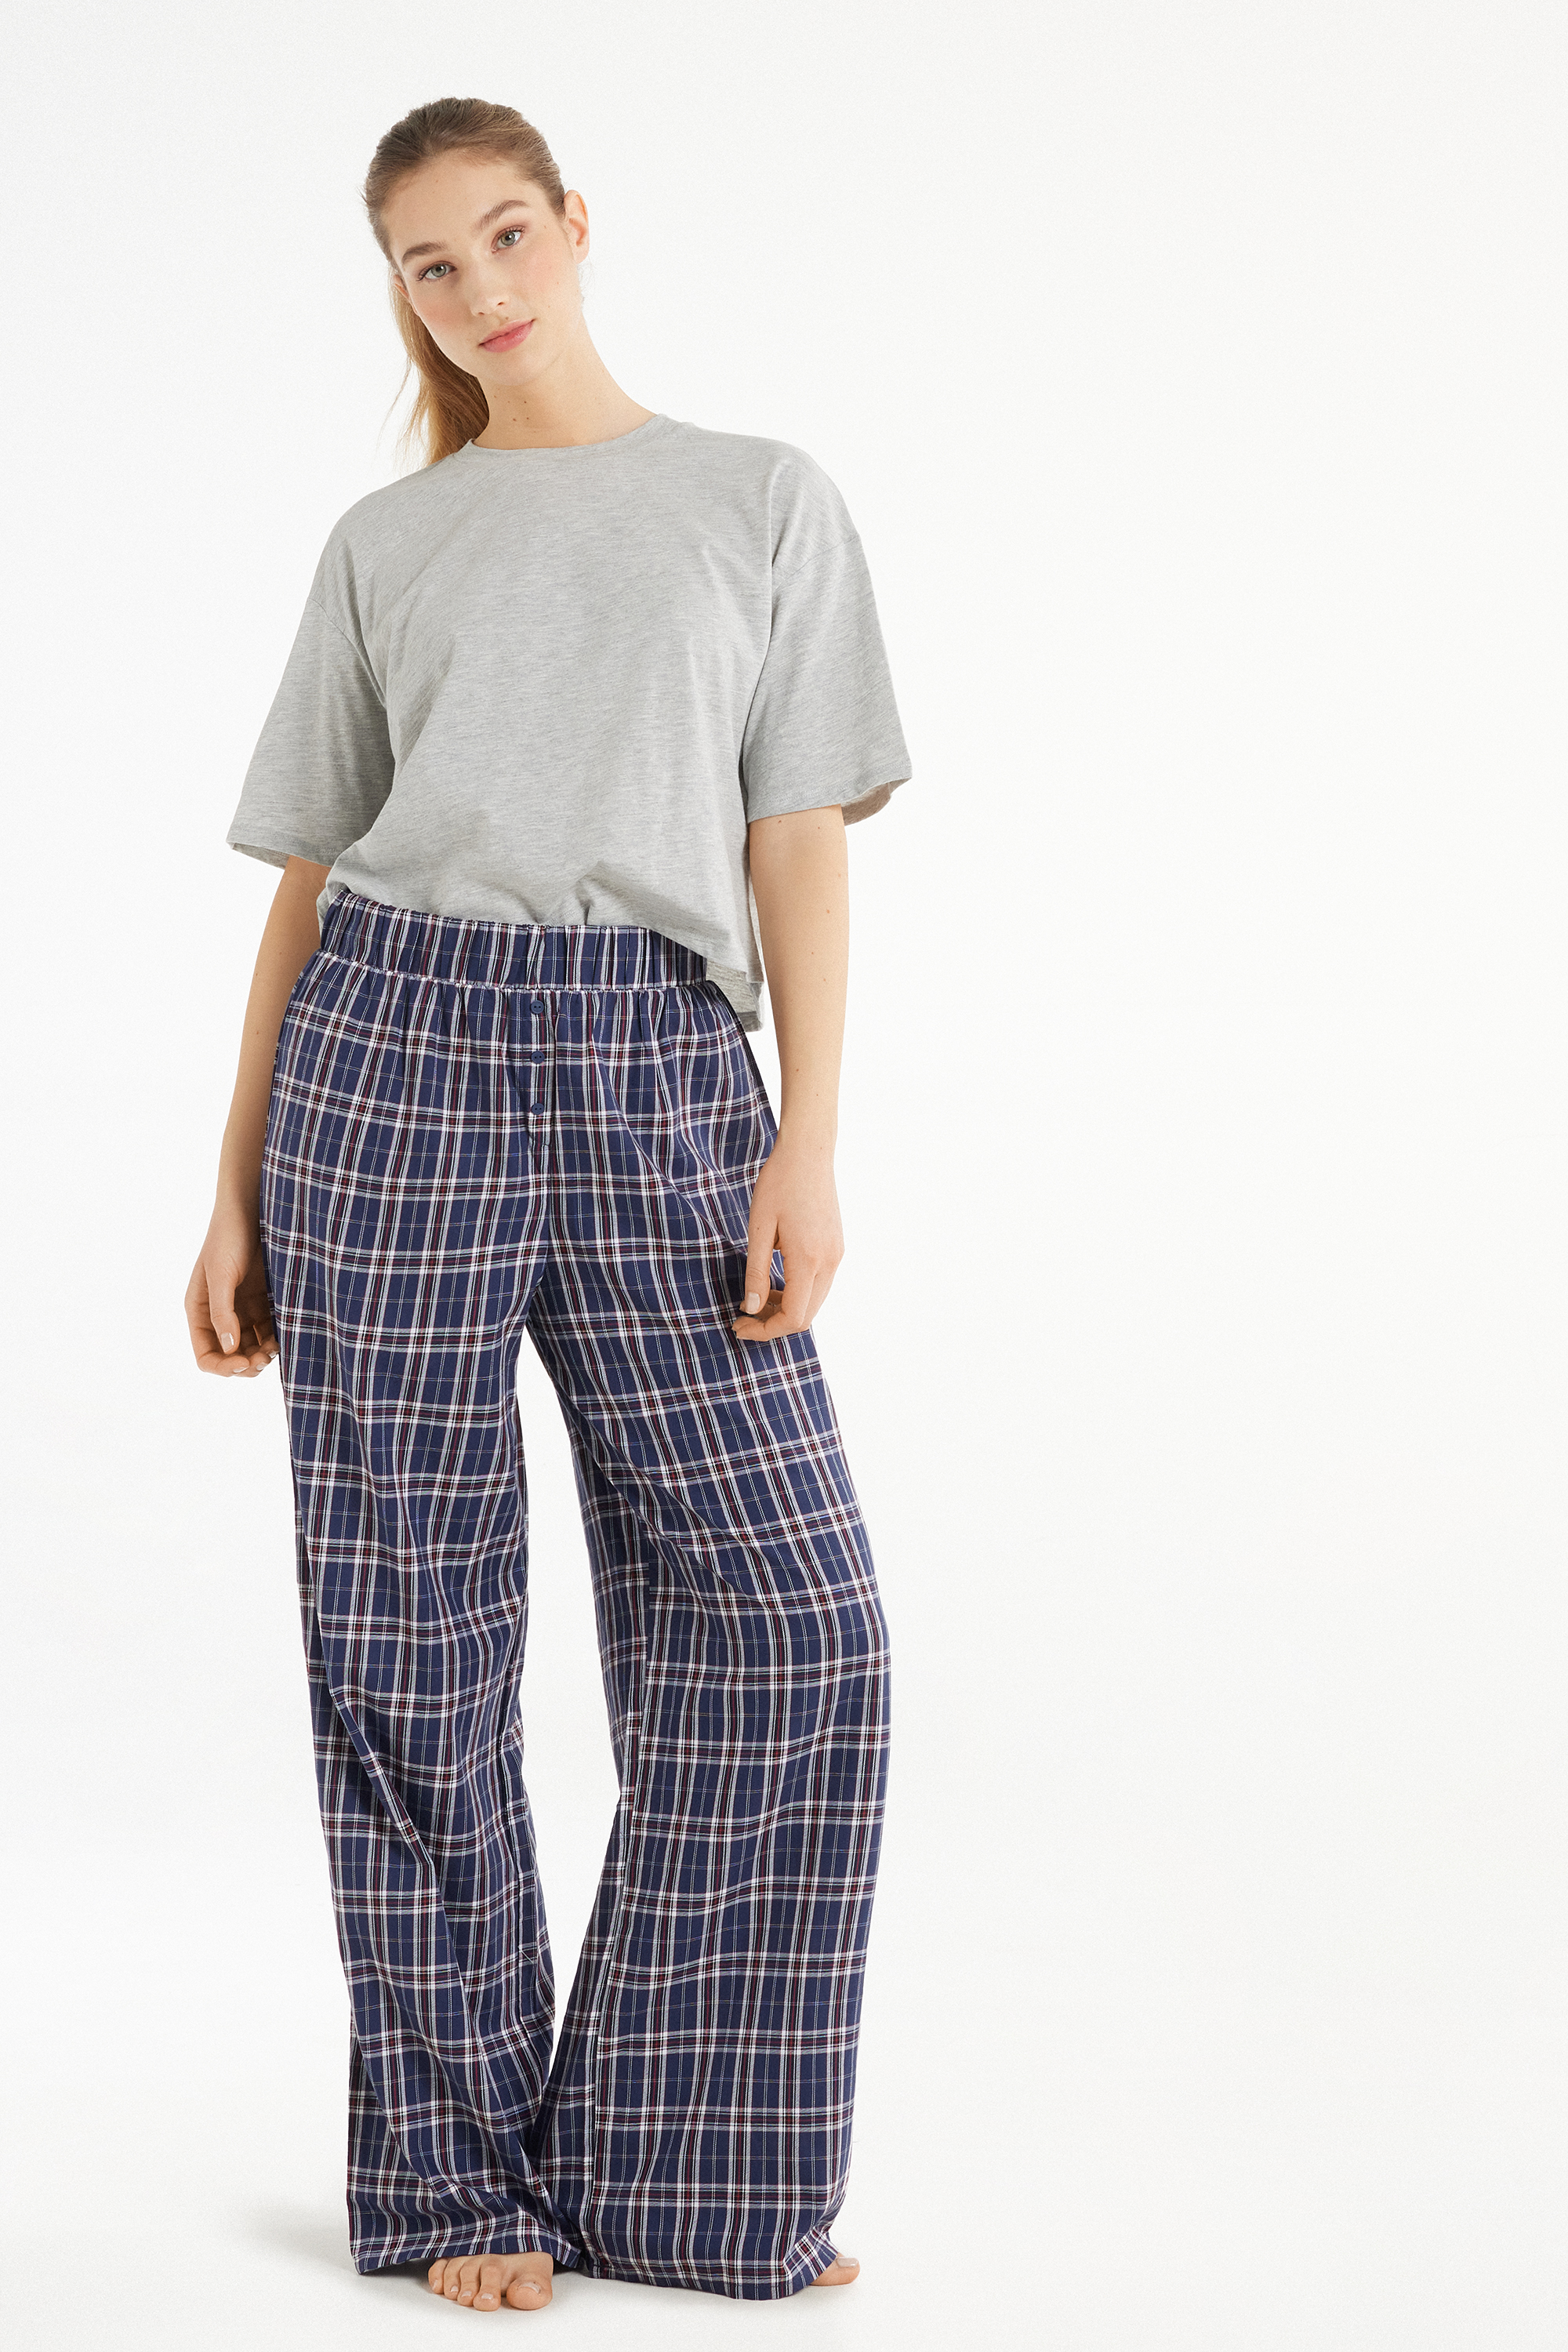 Pyjama mit halblangen Ärmeln und langer Hose aus Baumwolltuch